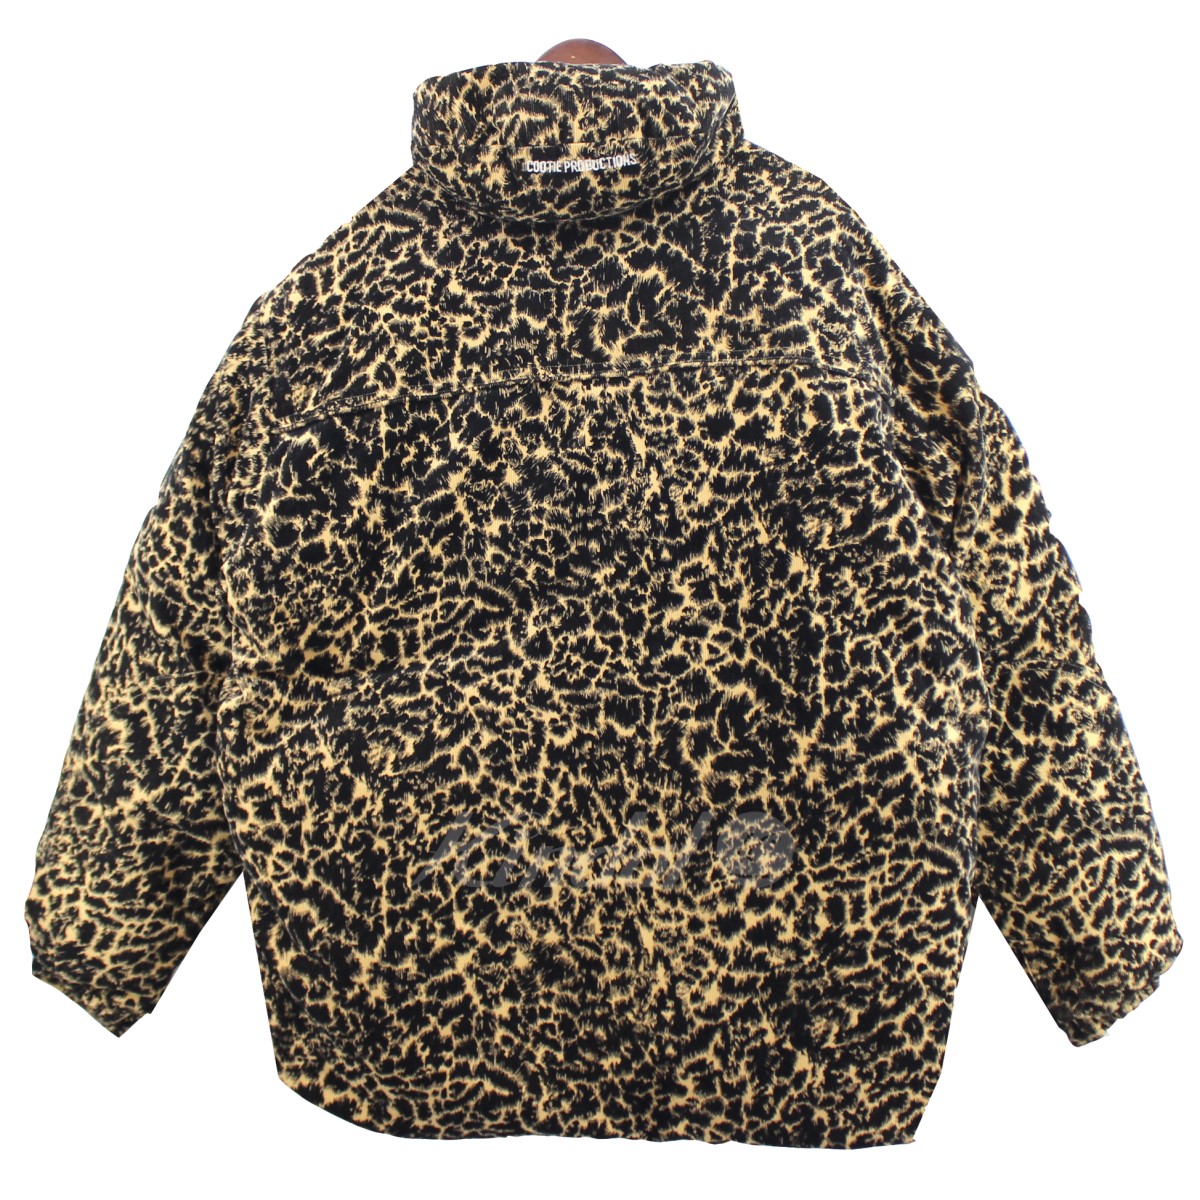 COOTIE / Corduroy Leopard Down Jacket smcint.com